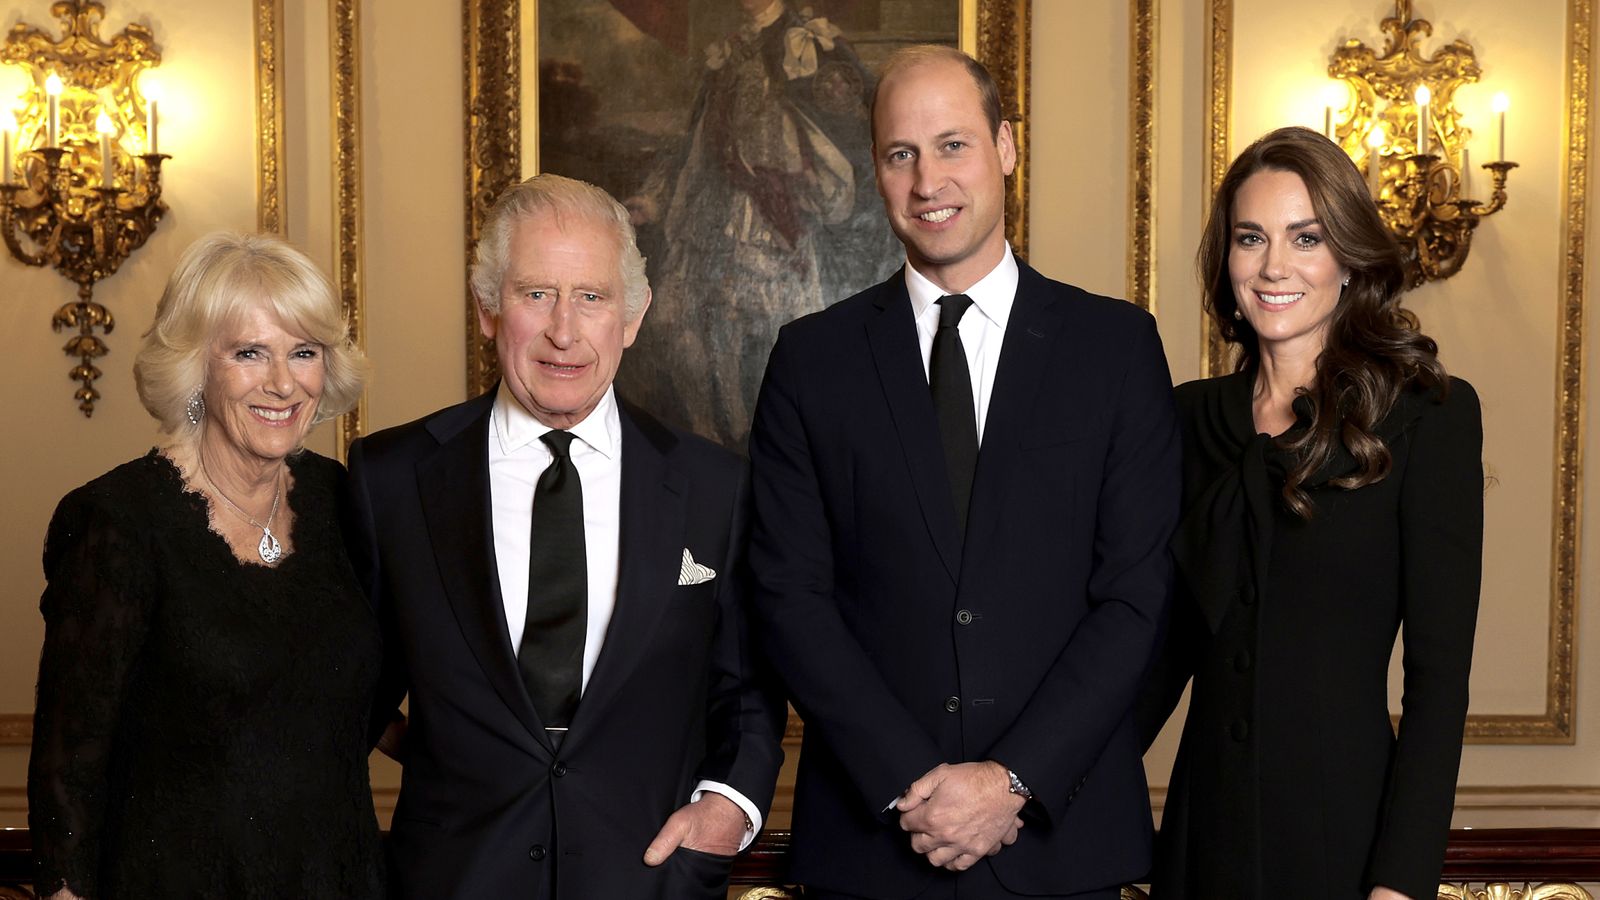 Opublikował pierwszy oficjalny obraz małżonka króla i królowej wraz z księciem i księżną Walii |  Wiadomości z Wielkiej Brytanii